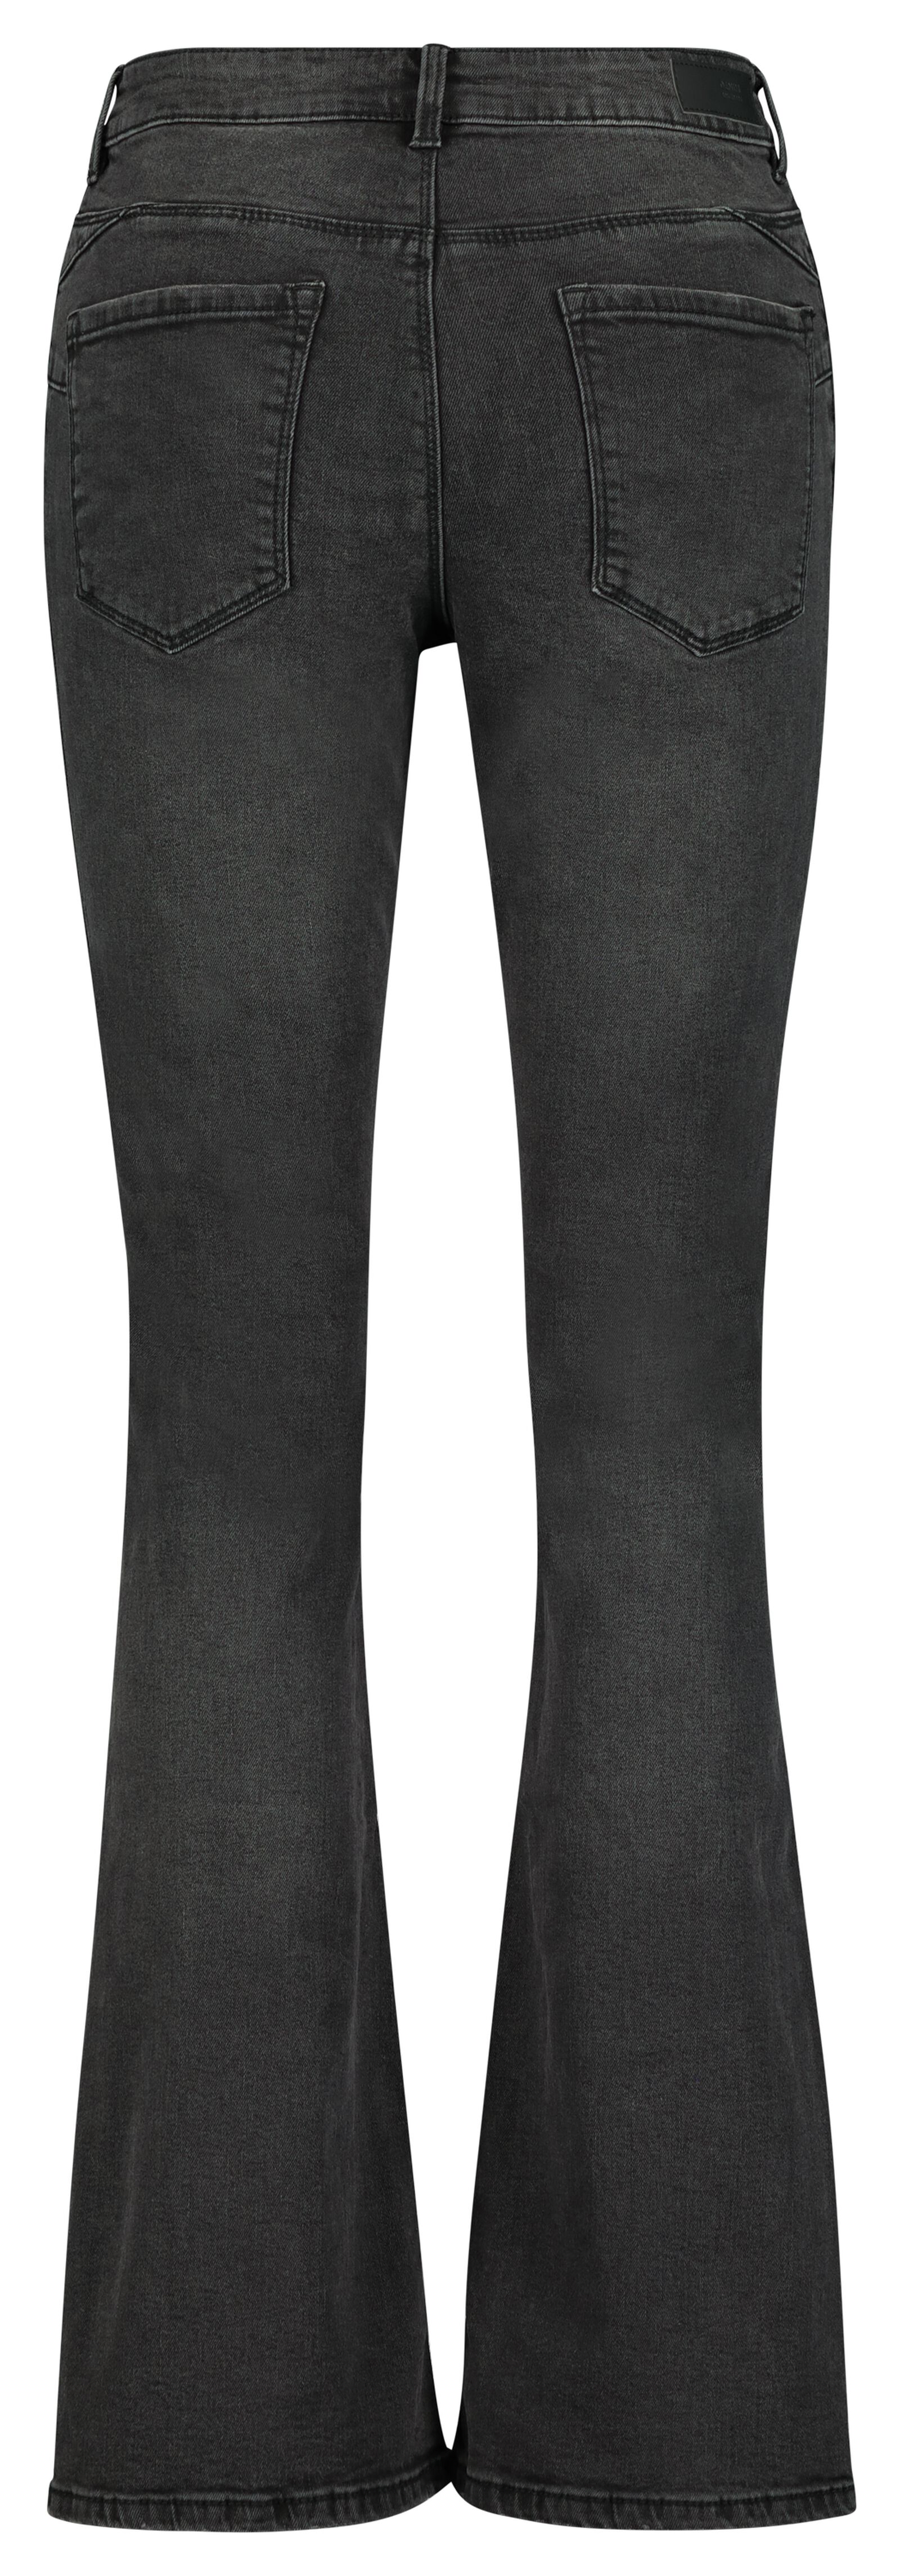 dames jeans bootcut shaping fit zwart 42 - 36291749 - HEMA